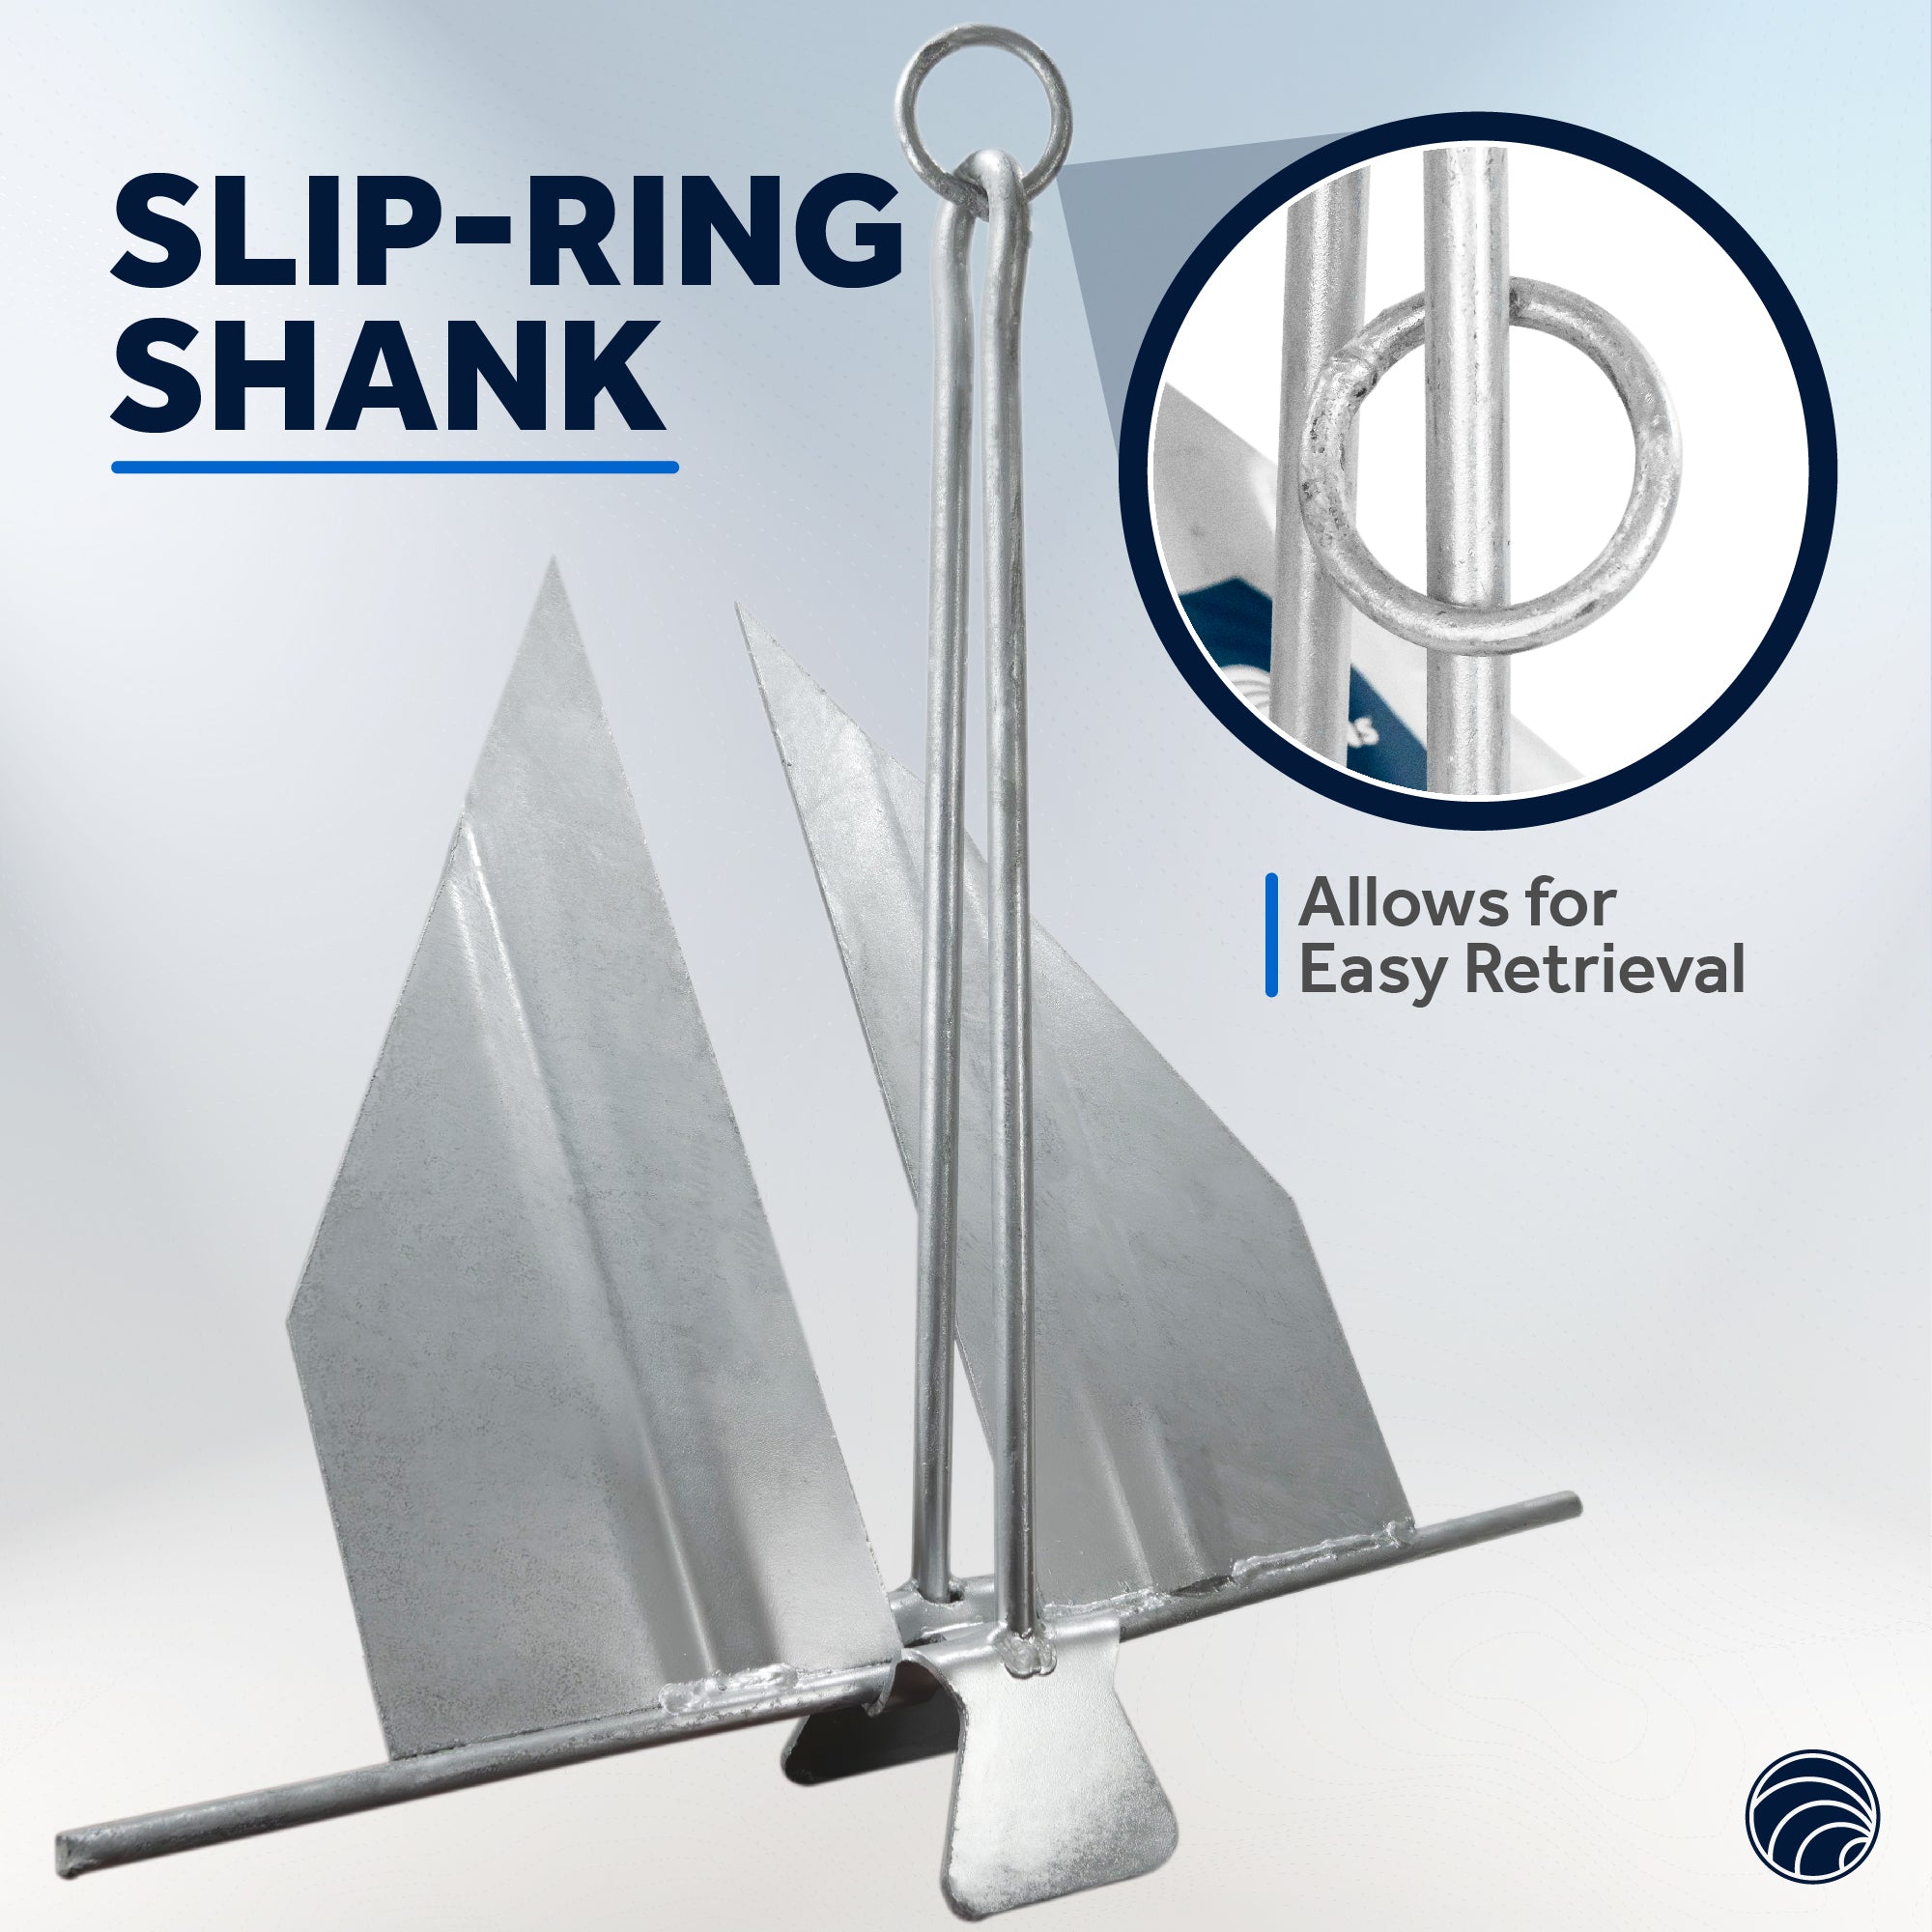 Boat Fluke Anchor, 8 Lb Easy-Release Galvanized Steel, Slip Ring Shank - FO4624